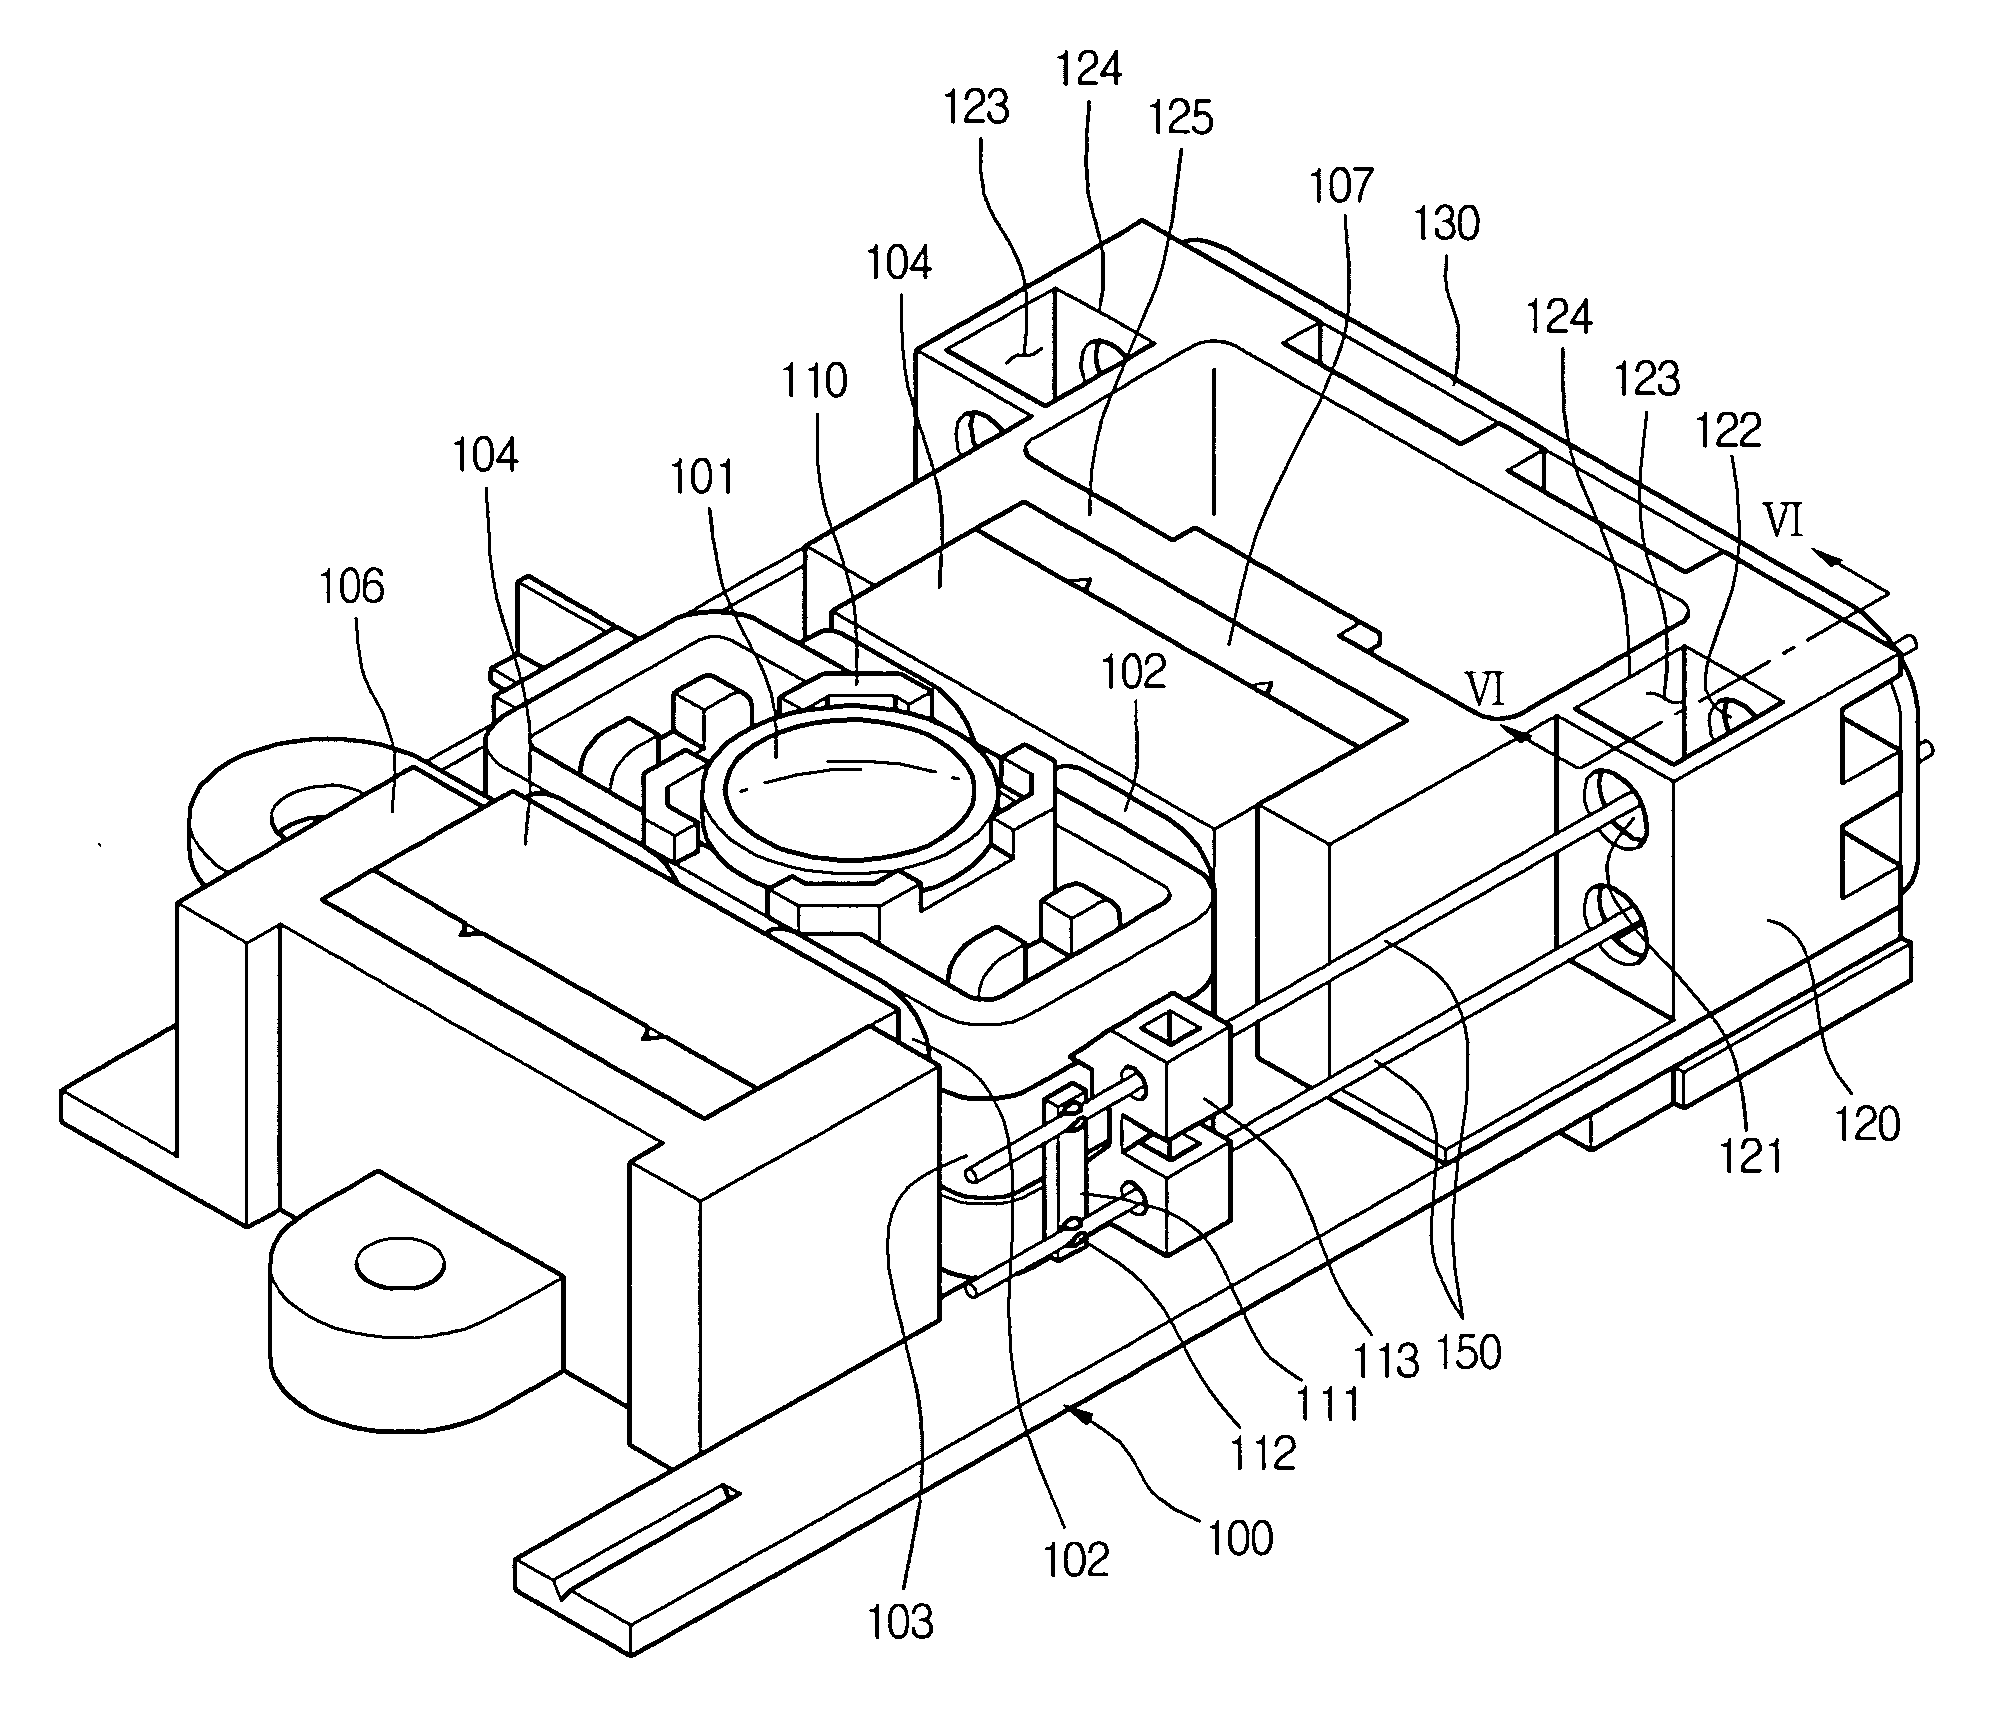 Optical pick-up actuator